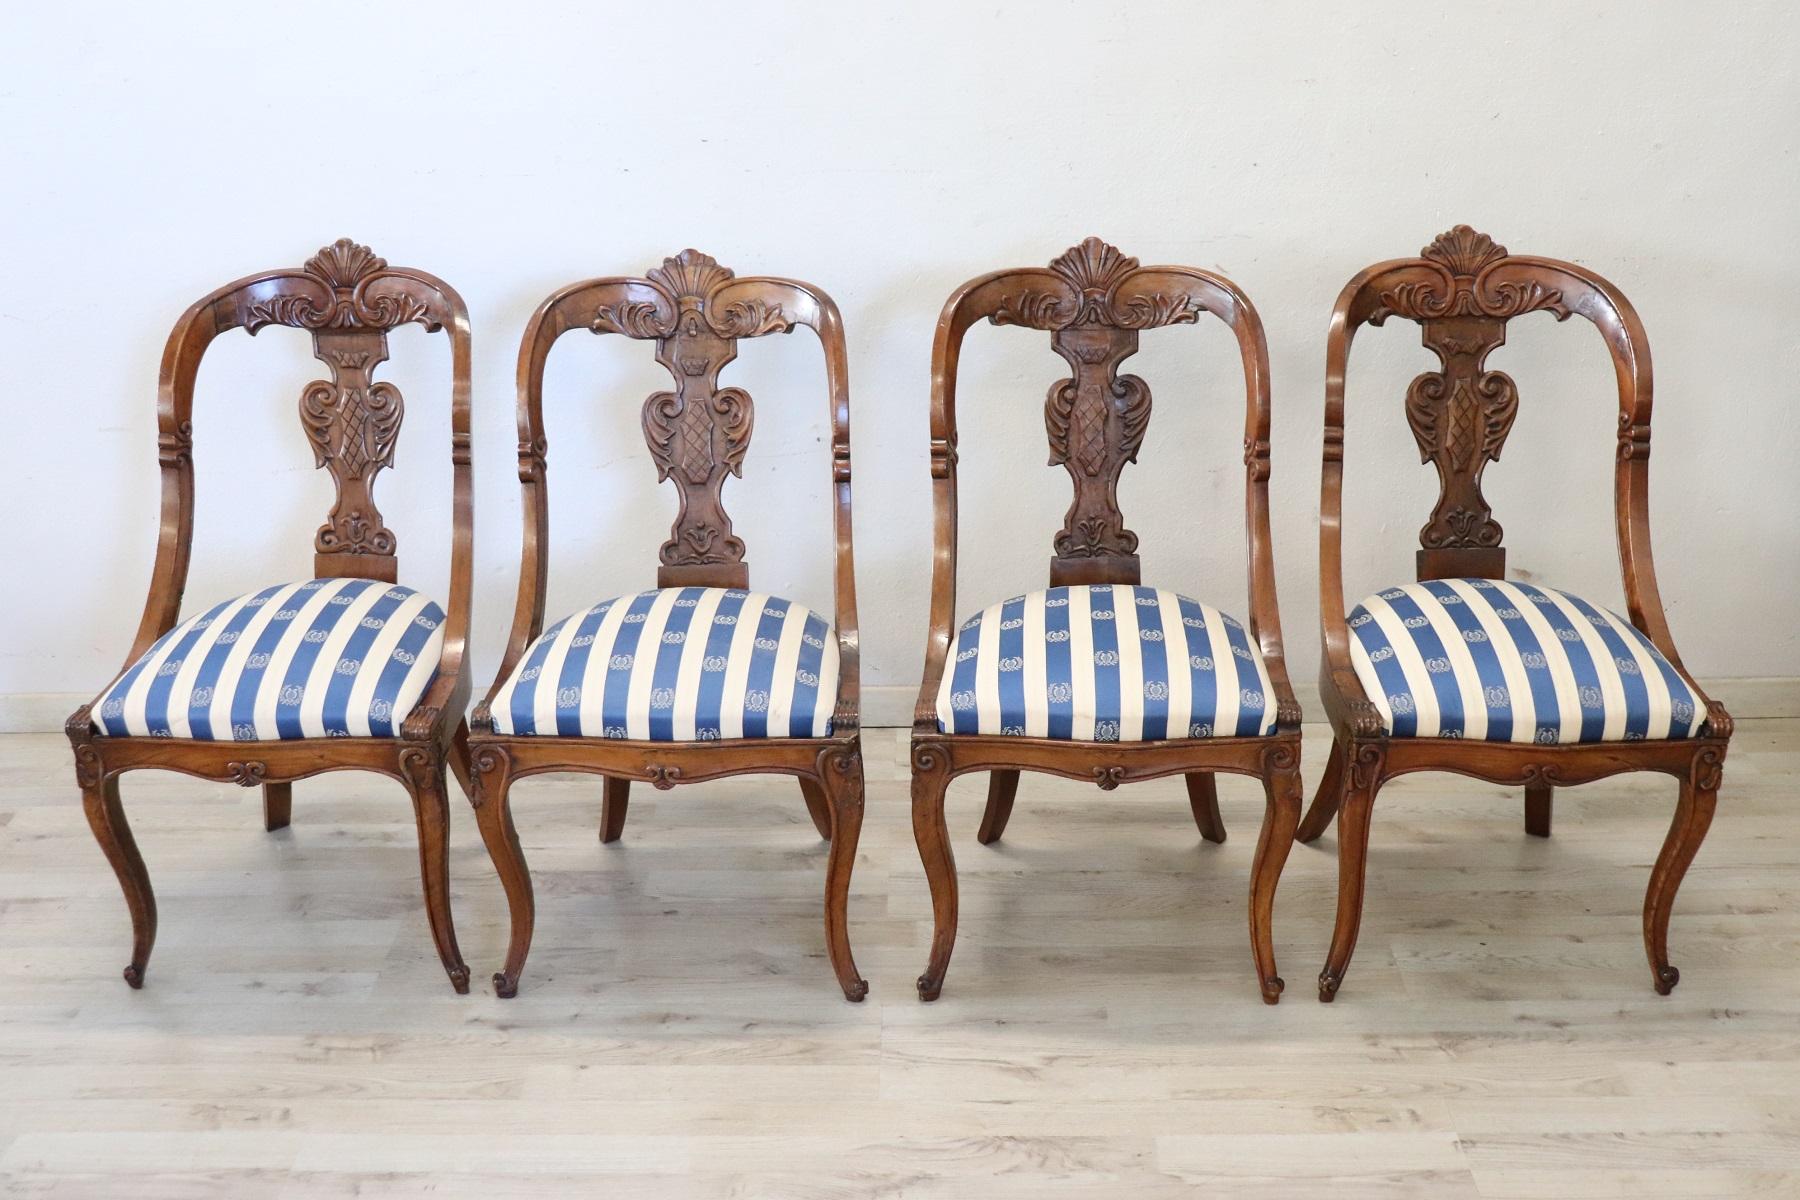 Magnifique ensemble de quatre chaises italiennes Charles X du 19ème siècle en noyer massif. Caractérisé par un dossier enveloppant et raffiné, agrémenté d'une décoration élaborée, sculptée à la main dans du bois de noyer. L'assise est large et